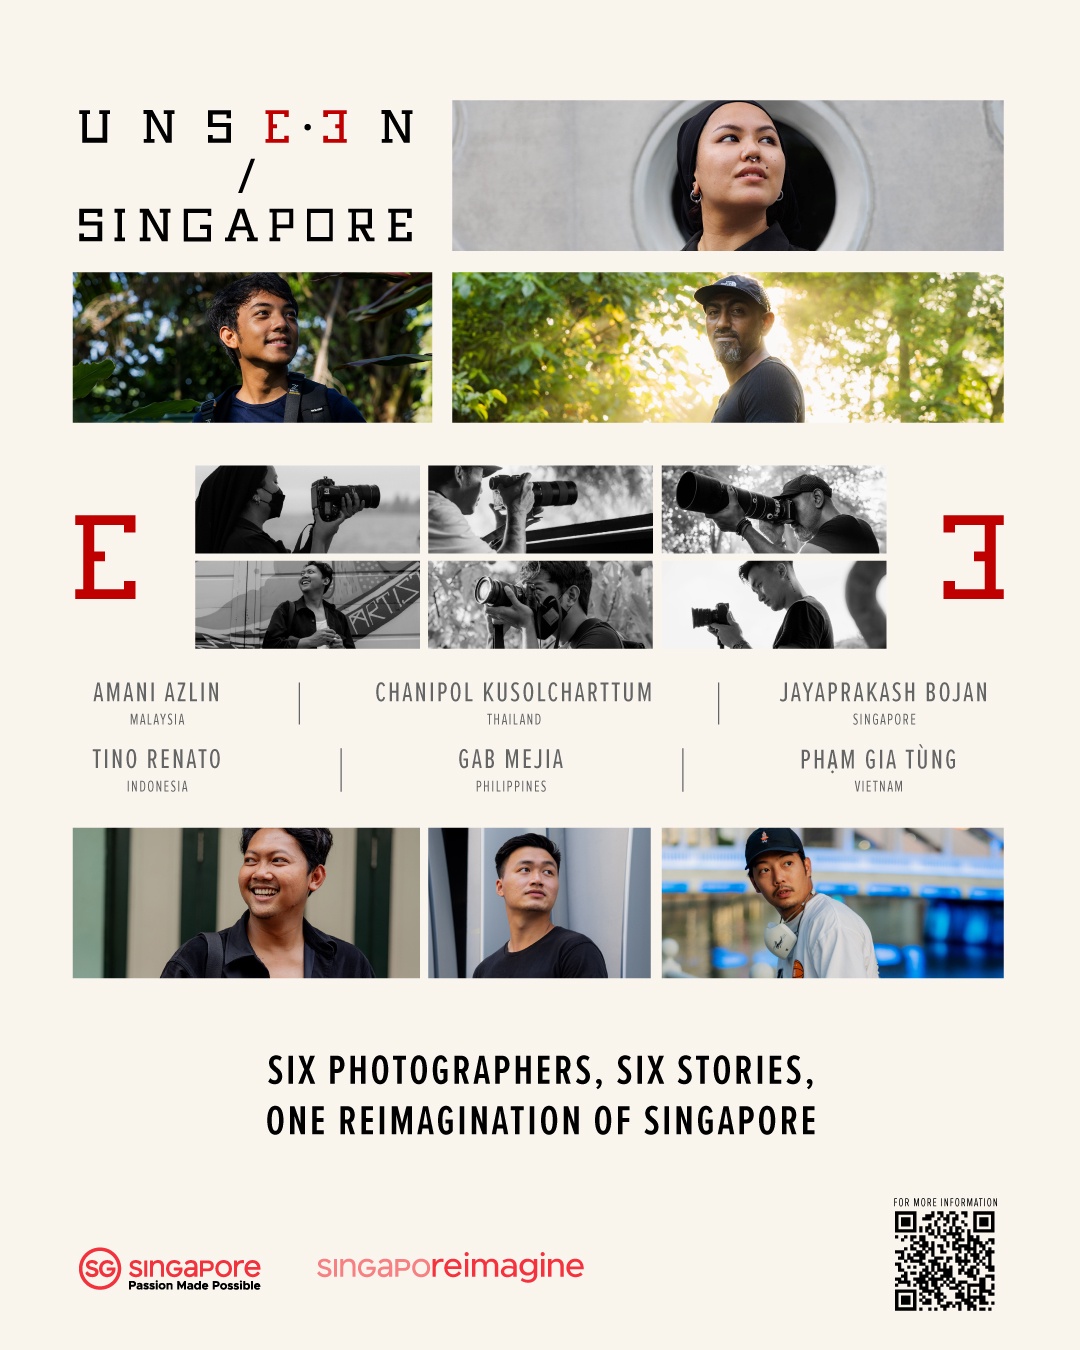 การท่องเที่ยวสิงคโปร์เปิดตัวแคมเปญอันซีนสิงคโปร์ (UNSEEN/SINGAPORE)